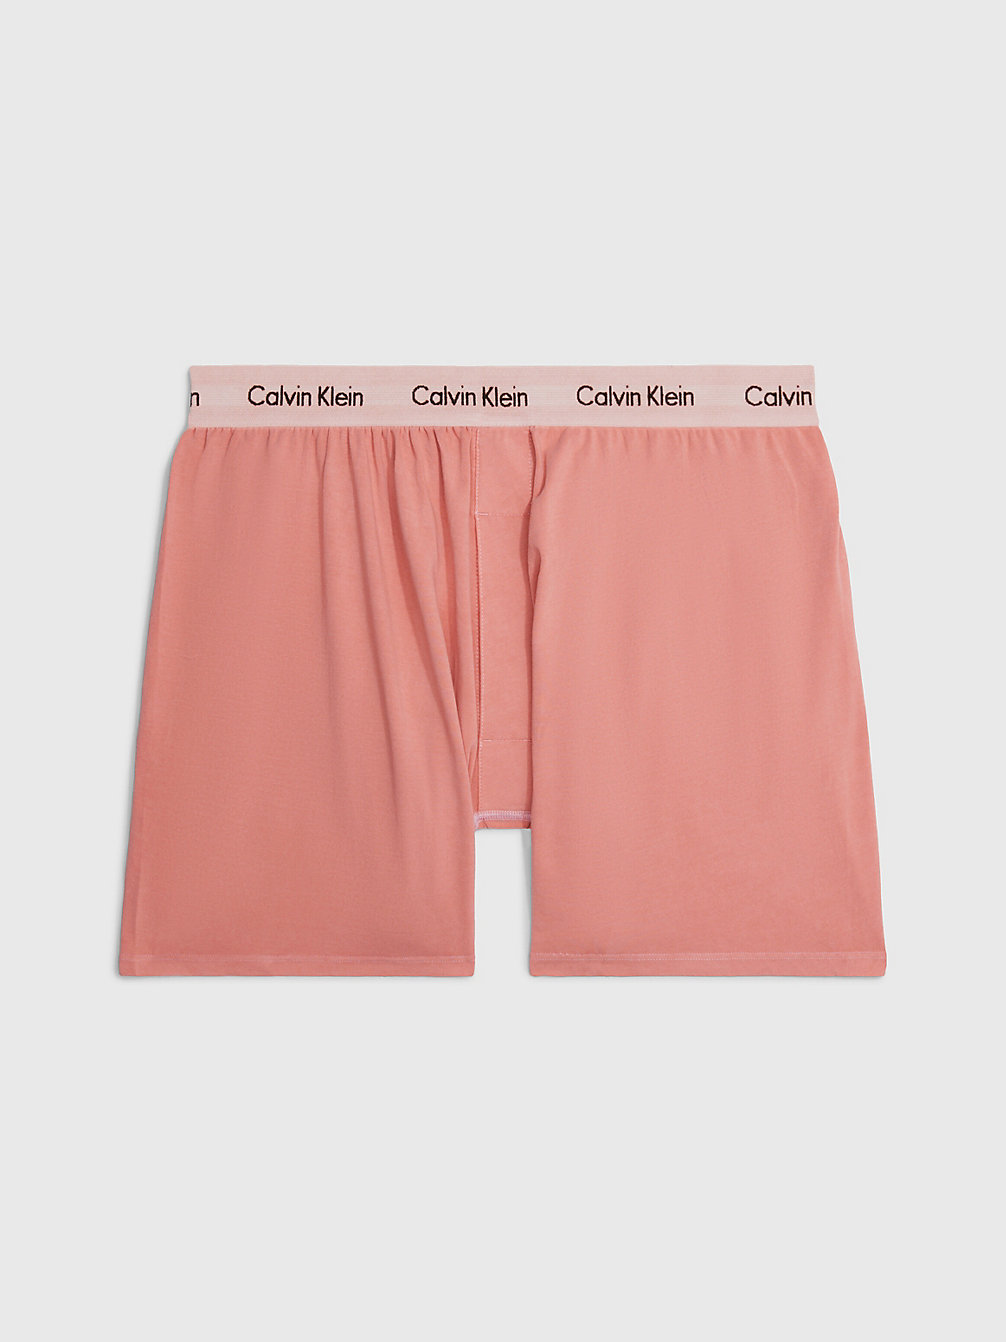 RUST > Boxershorts - Modern Cotton > undefined Herren - Calvin Klein